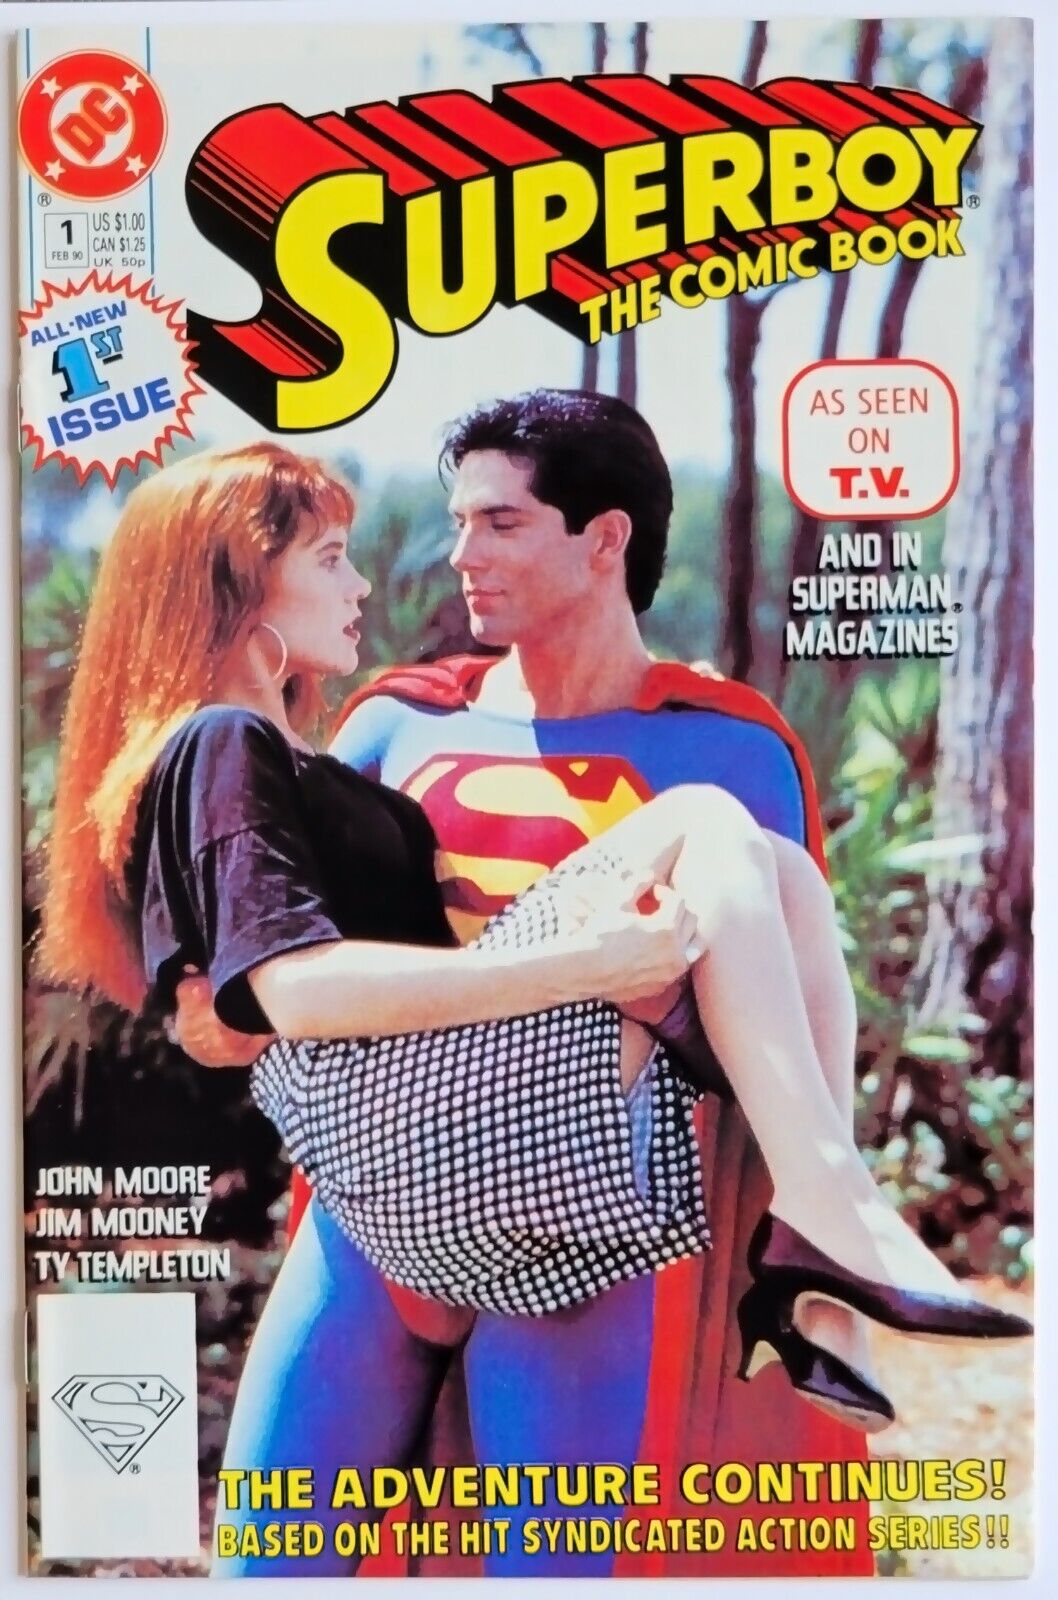 Superboy #1 (1990) Vintage Premier Issue Vol. 3, Clark Leaves for College in FL